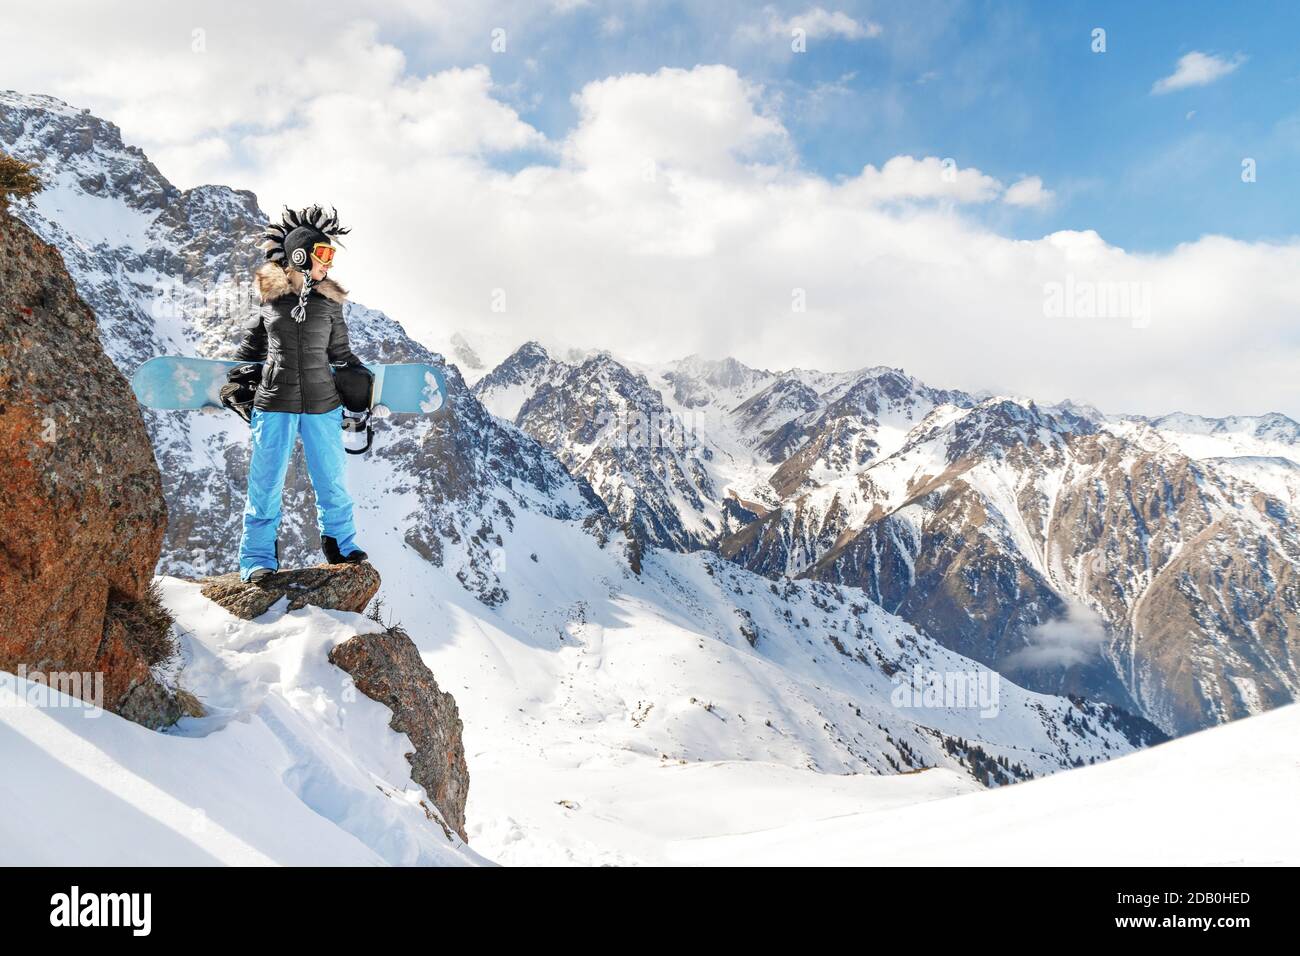 Meilleure photo épique de sport d'hiver extrême avec une jeune femme snowboarder dans un drôle chapeau mohawk dans les montagnes rocheuses. Banque D'Images